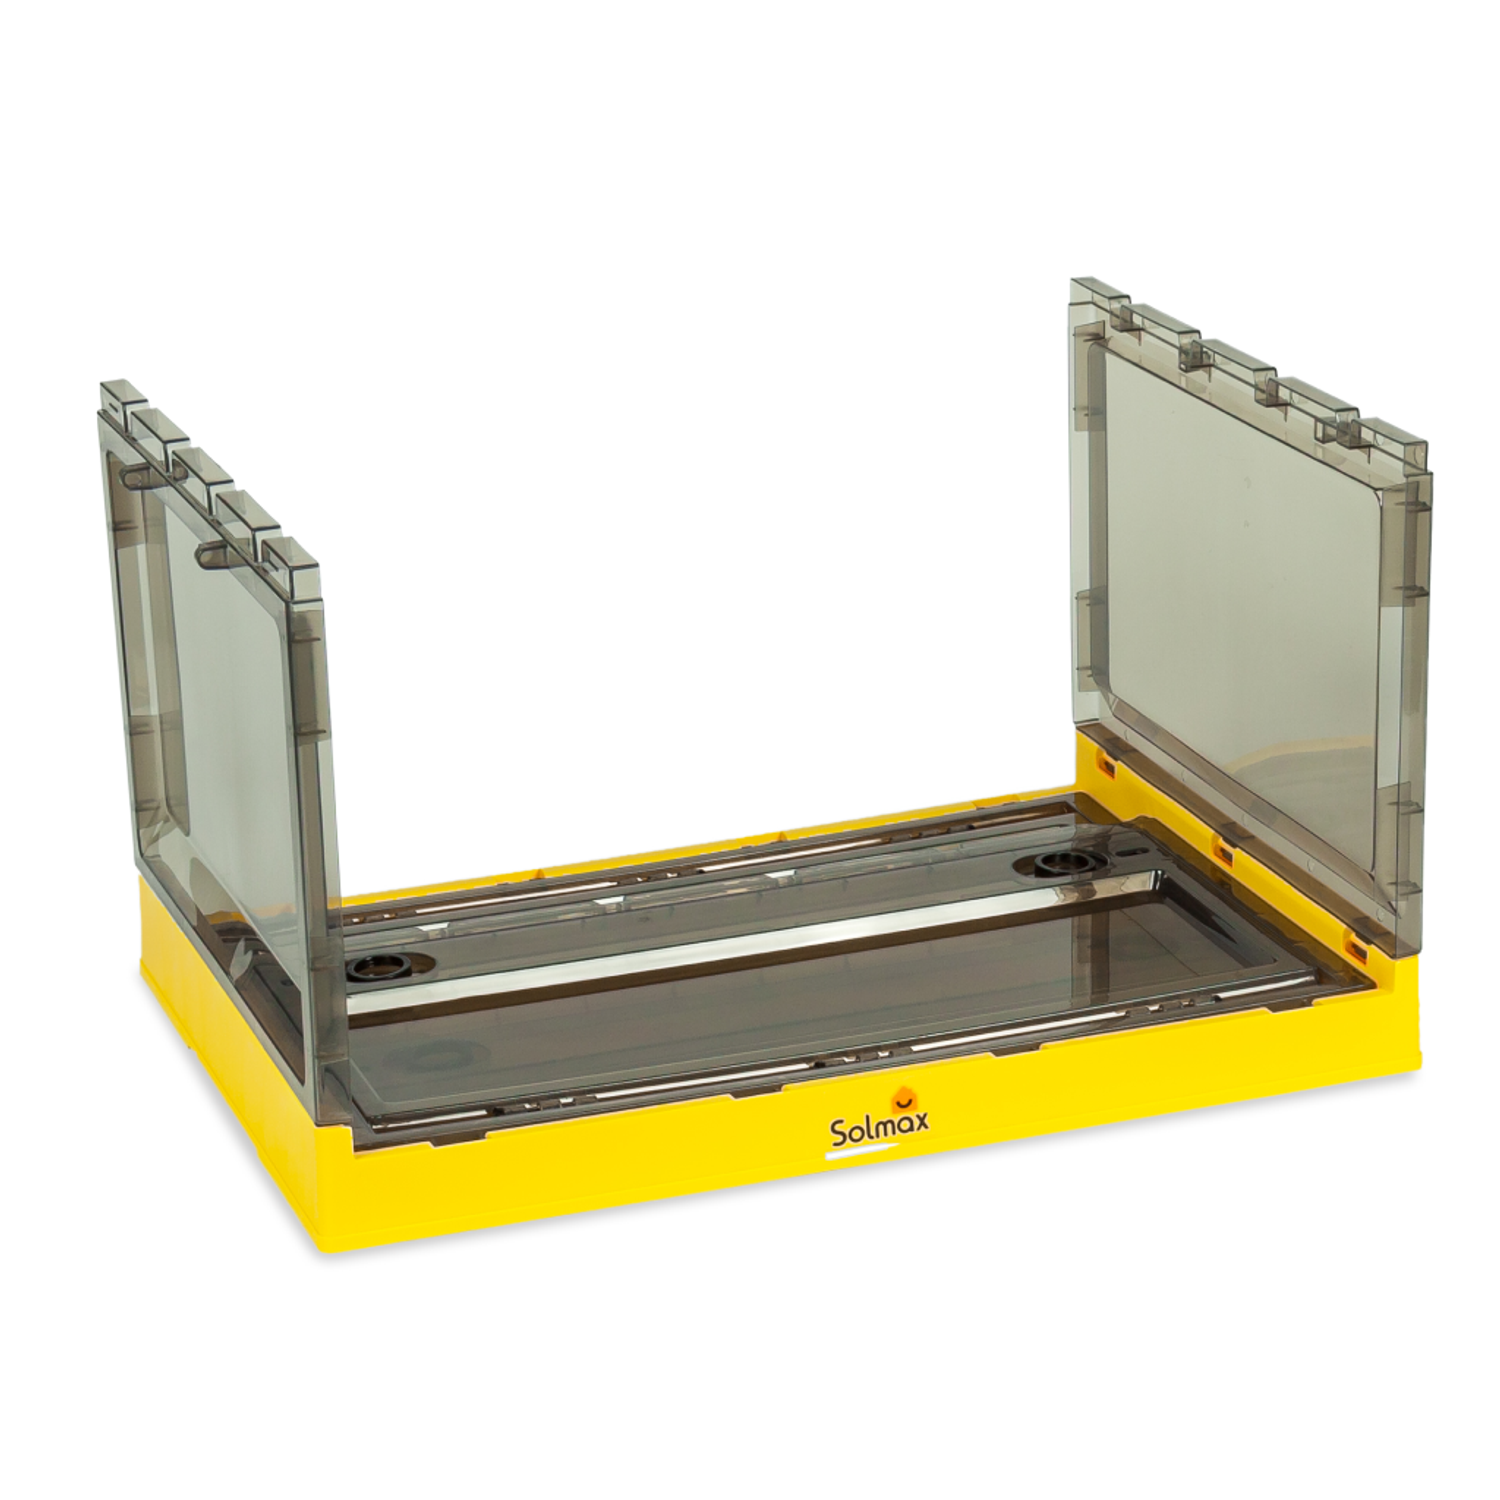 Ящик для хранения вещей Solmax прозрачный контейнер с крышкой на колесах 51х36х30 желтый - фото 7